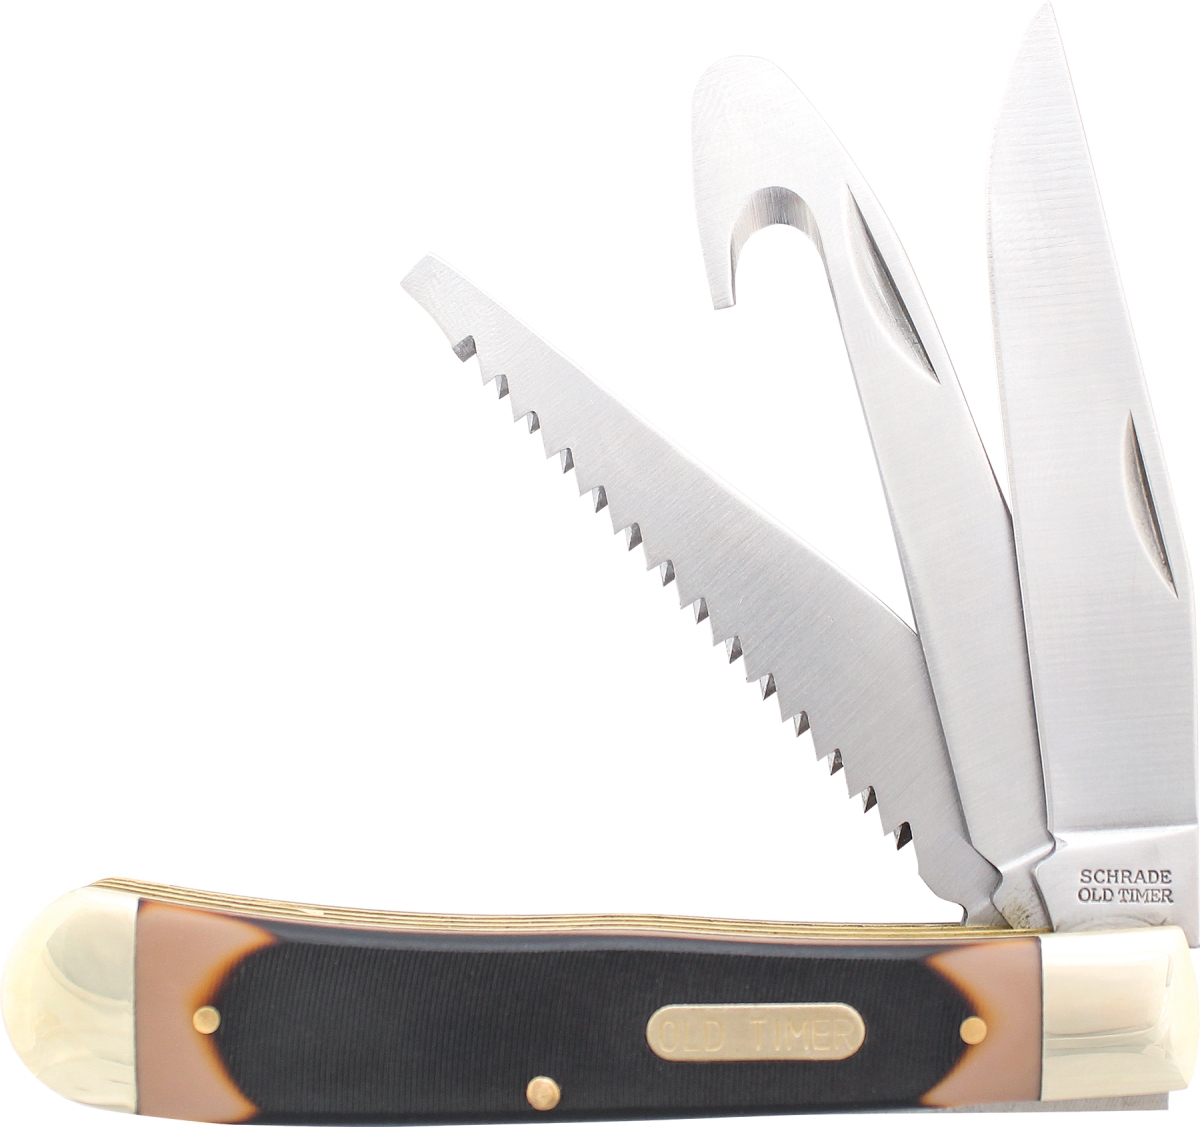 Sch-69ot 2019 Schrade Old Timer Premium Trapper 3-blades With Saw, Gut Hook, & Clip Point